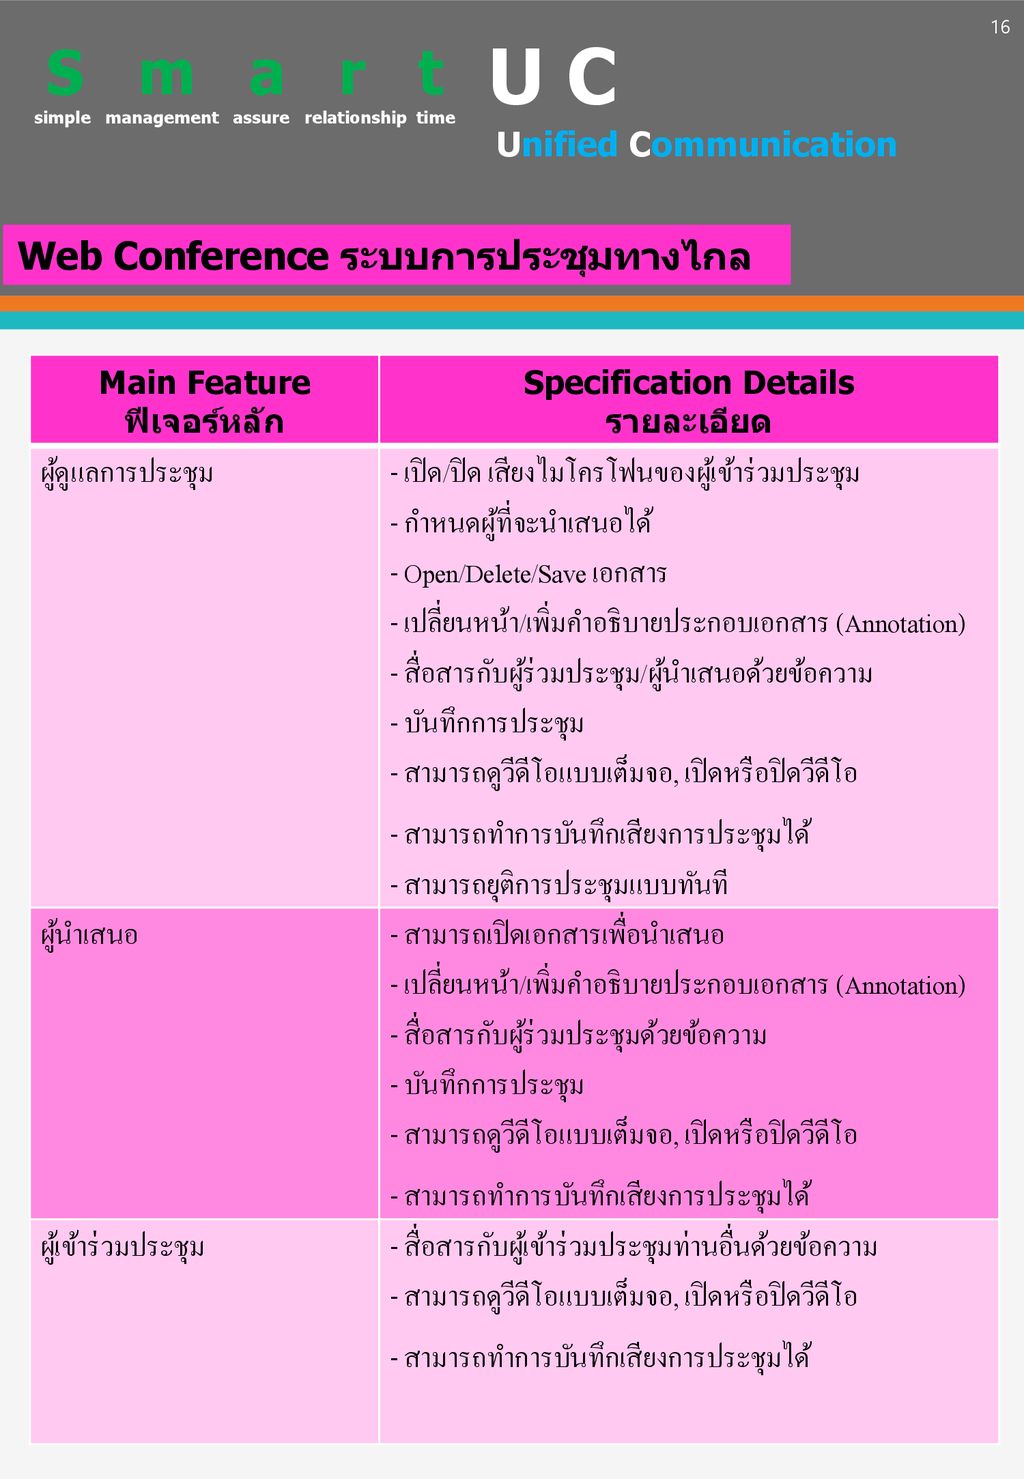 U C S m a r t Web Conference ระบบการประชุมทางไกล ผู้ดูแลการประชุม